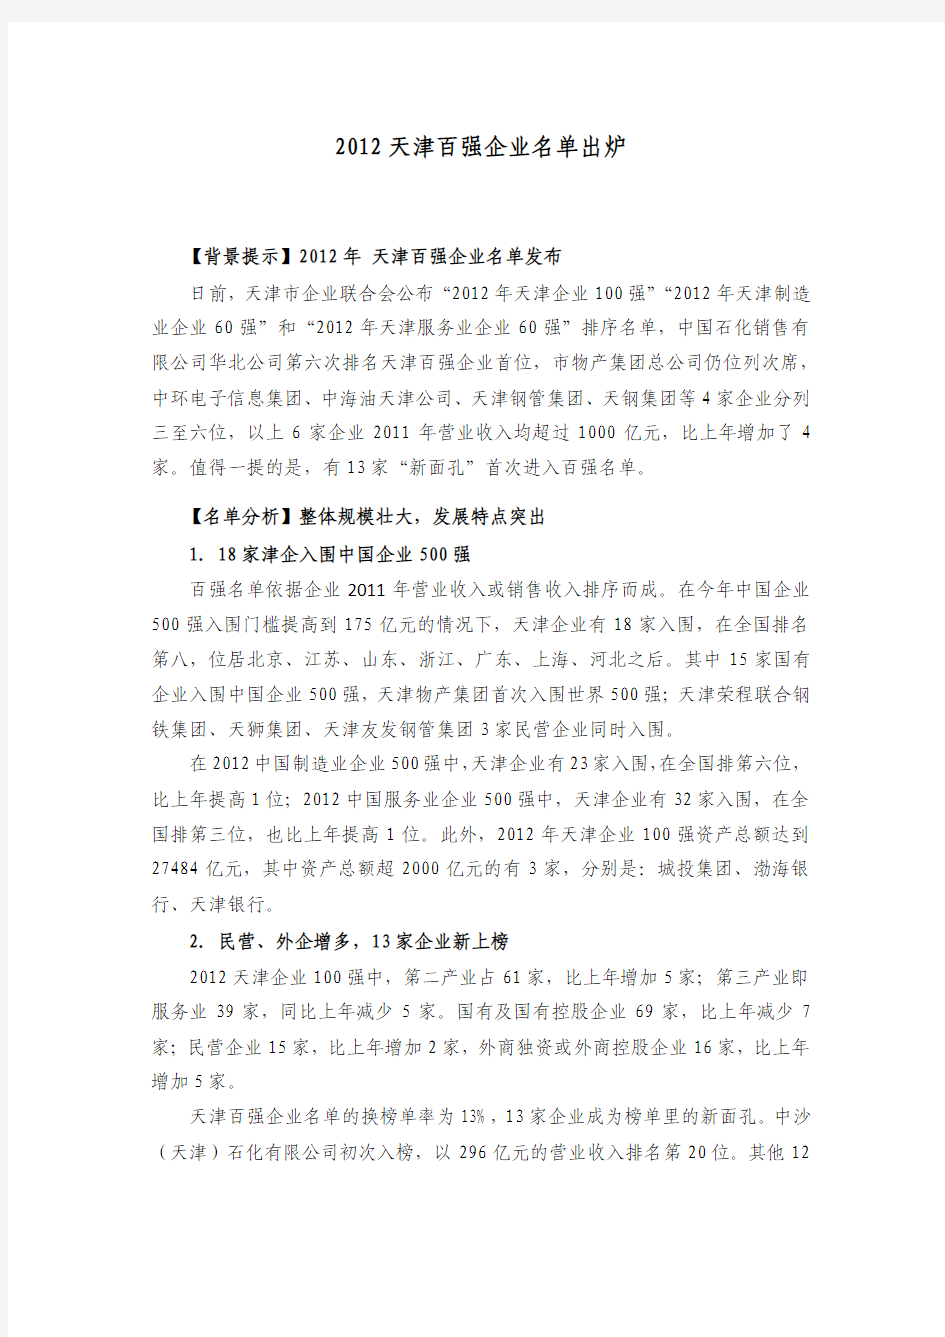 2012天津百强企业名单出炉